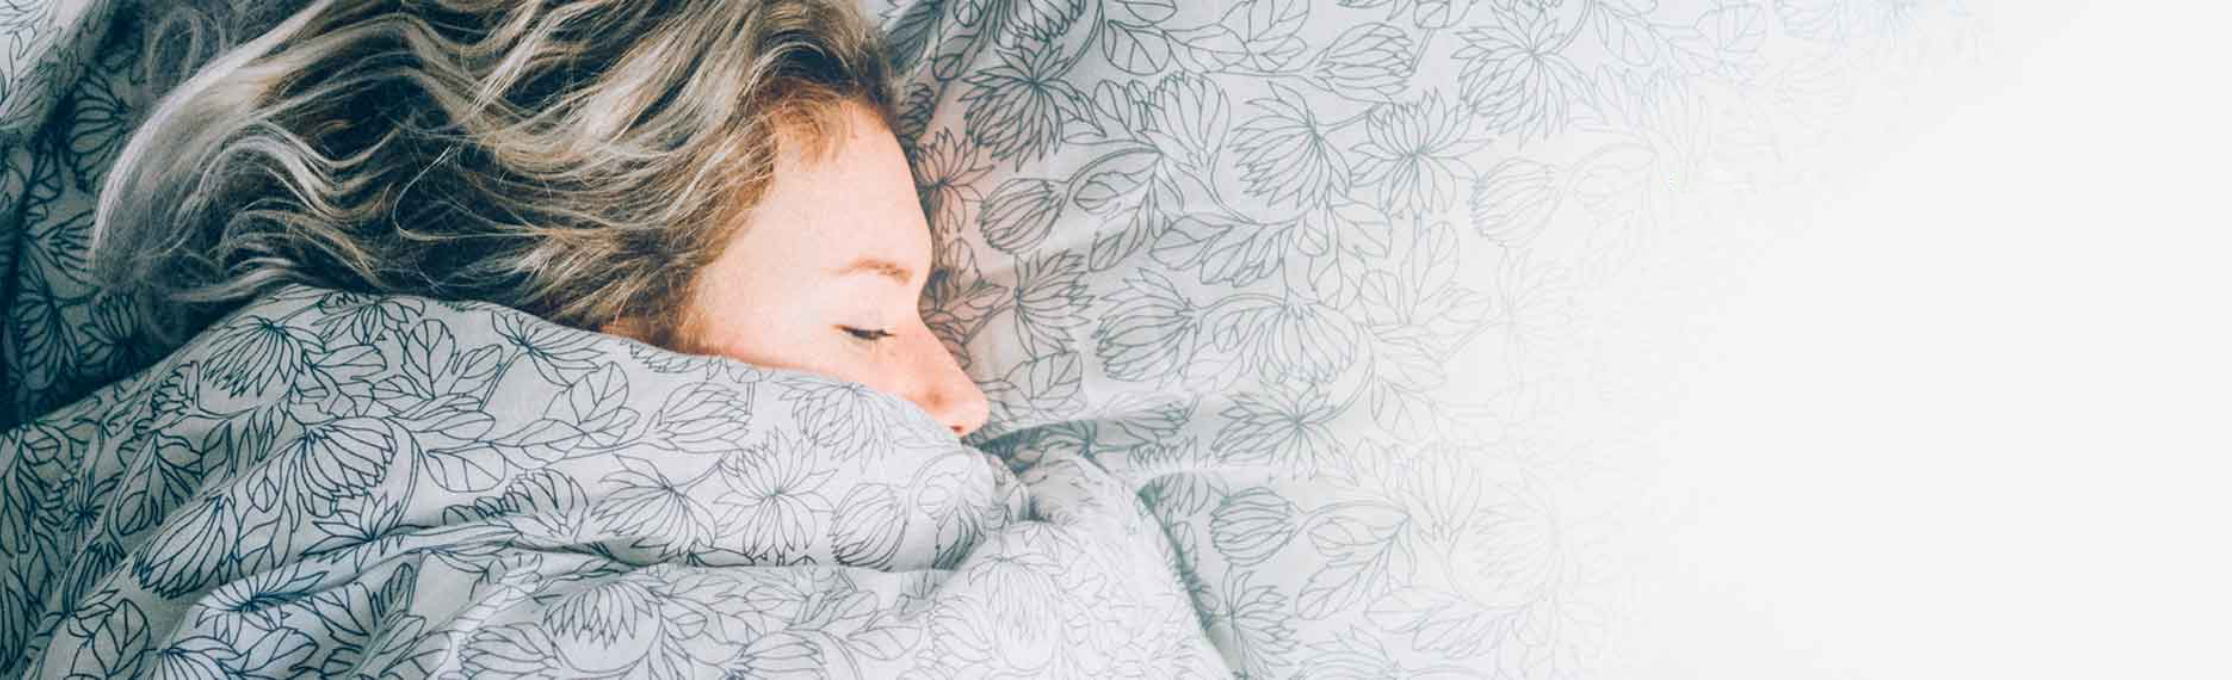 Mujer durmiendo envuelta en una manta